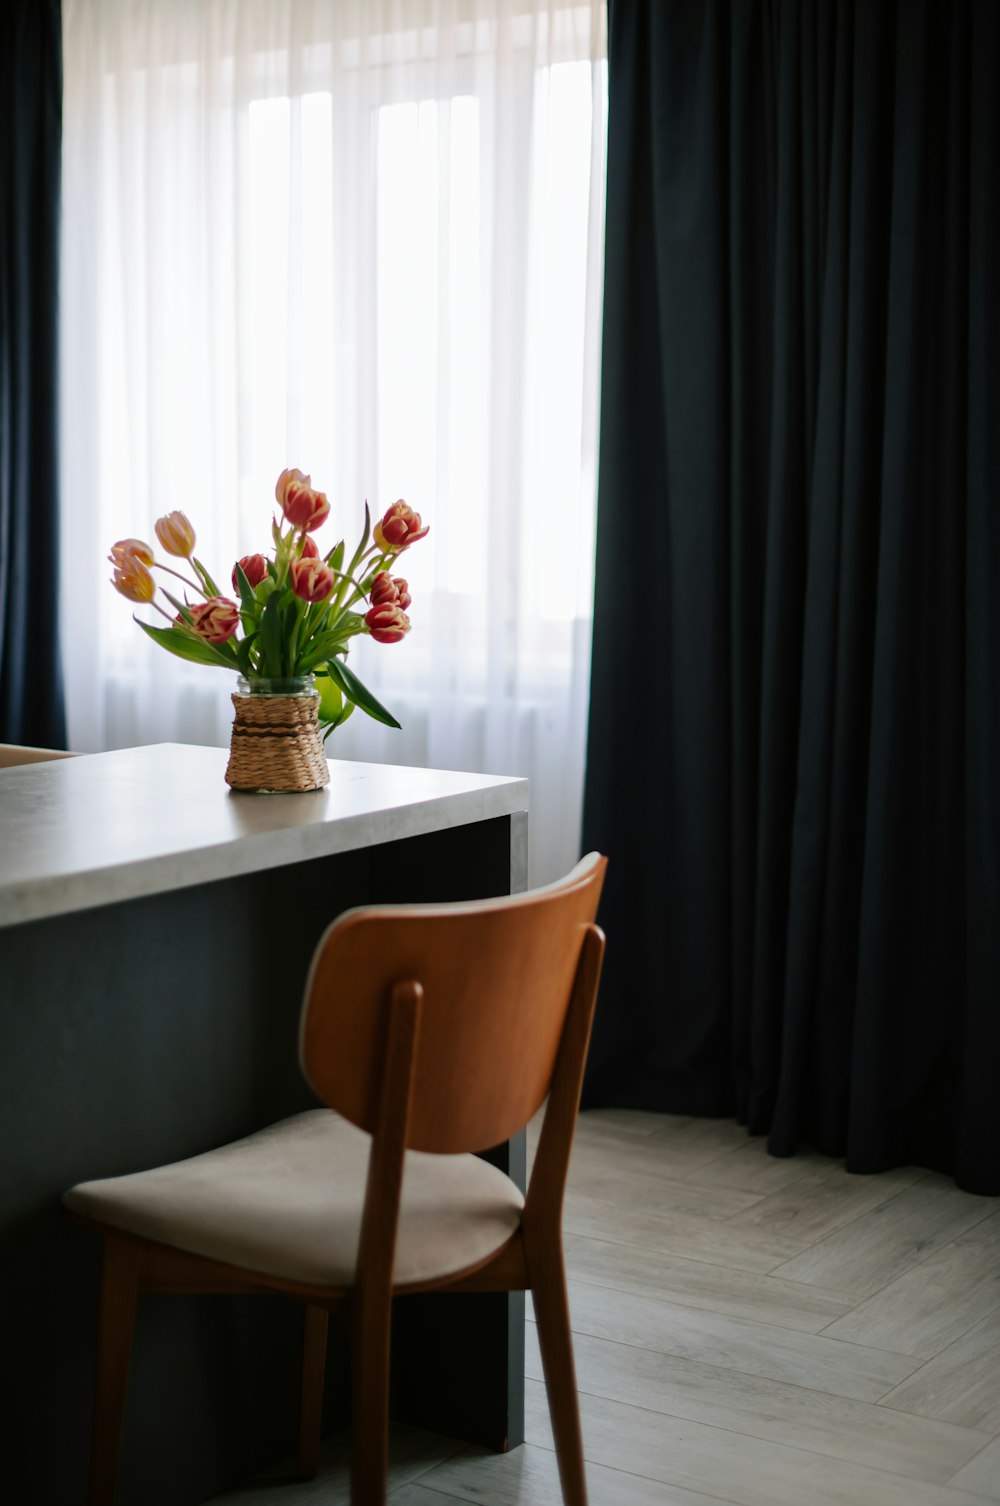 Eine Vase mit Tulpen steht auf einem Tresen neben einem Stuhl